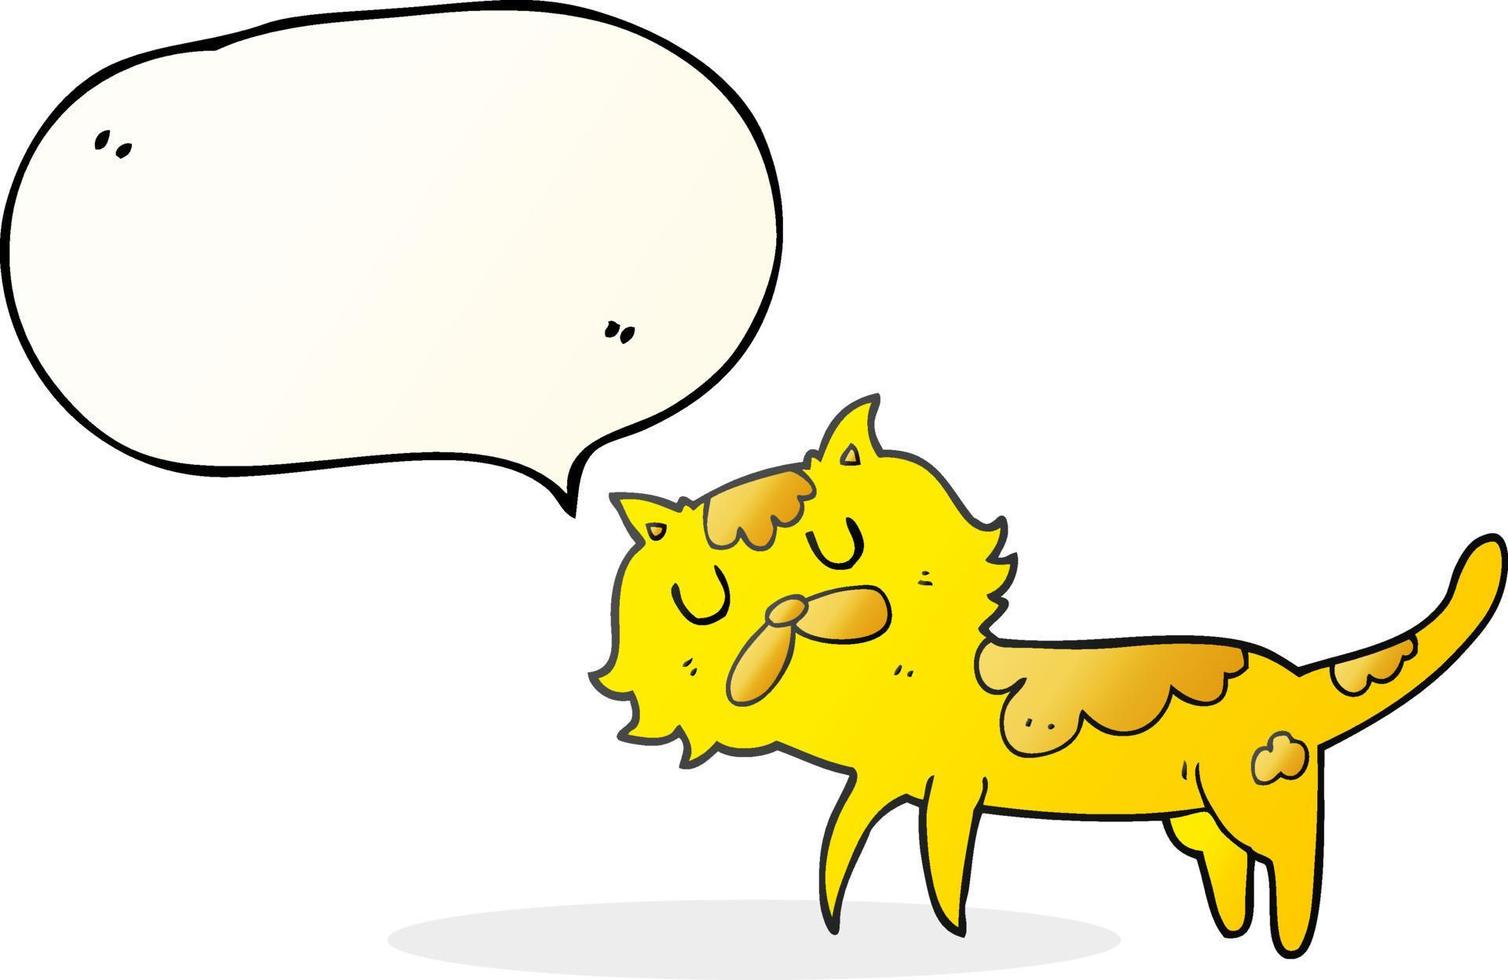 gato de desenho animado de bolha de fala desenhada à mão livre vetor